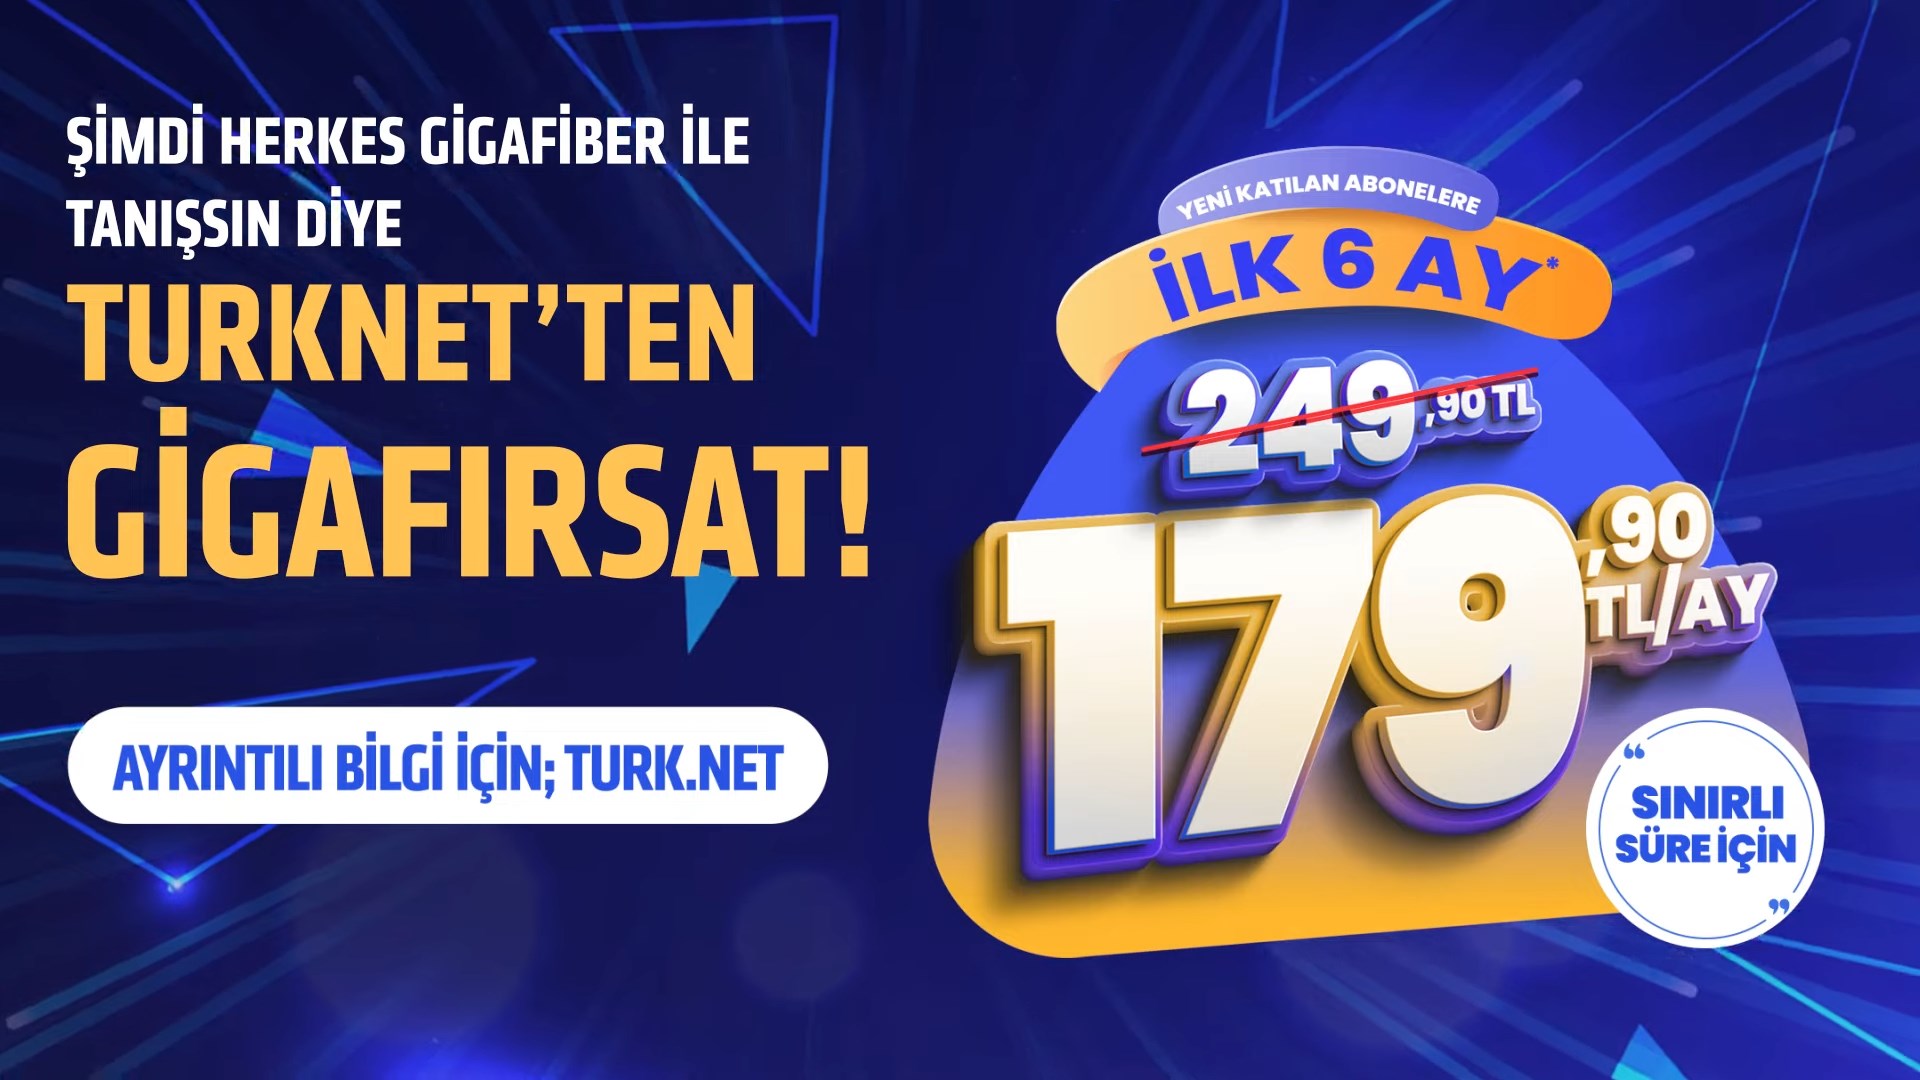 1.000 Mbps hızındaki TurkNet GigaFiber internet ilk 6 ay 179,90 T